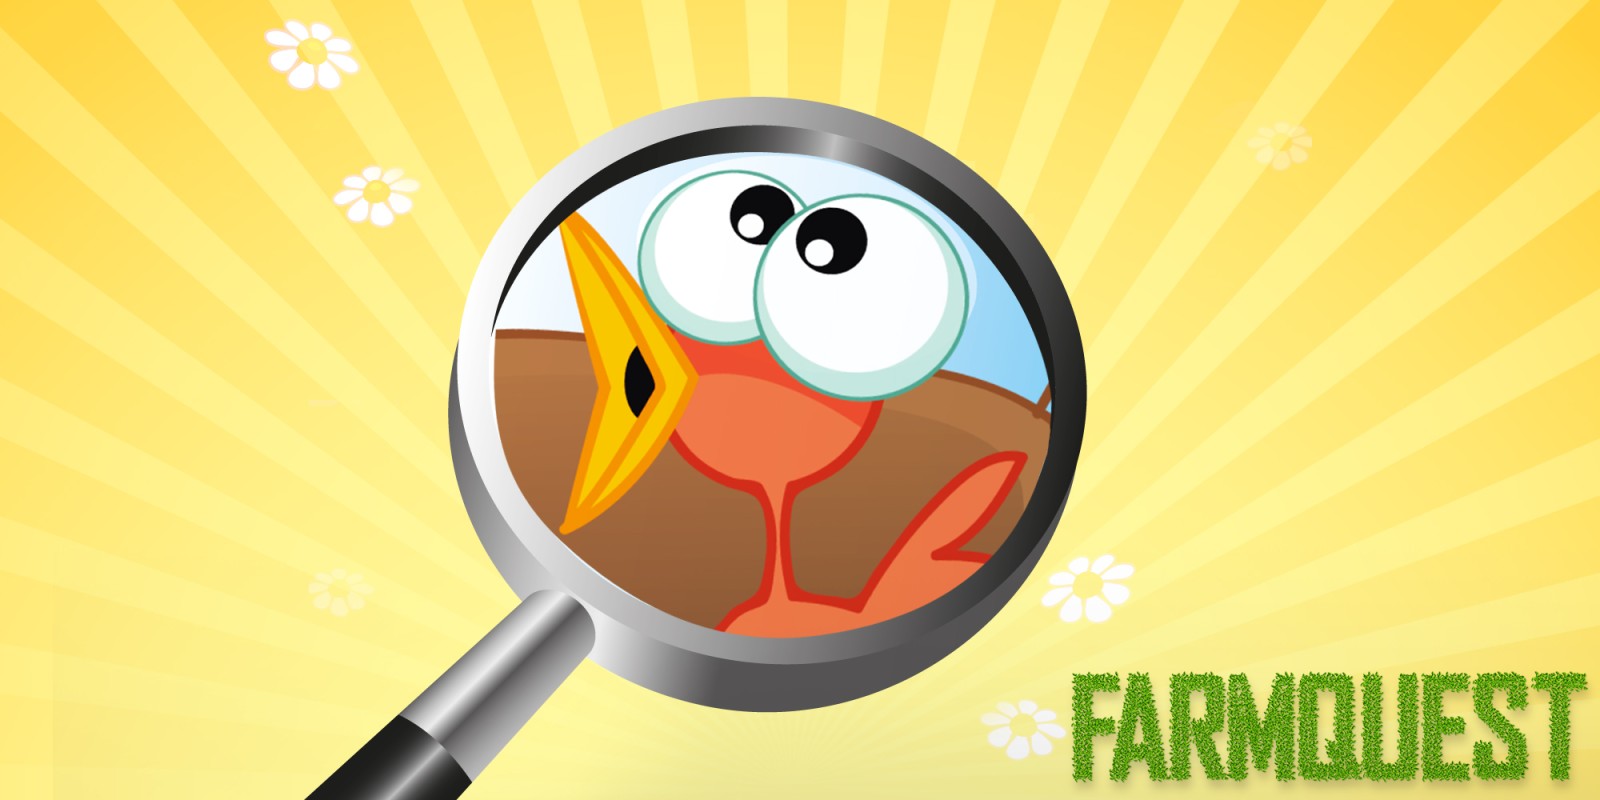 Farmquest — детская игра в поиск предметов на картинке со множеством предметов.